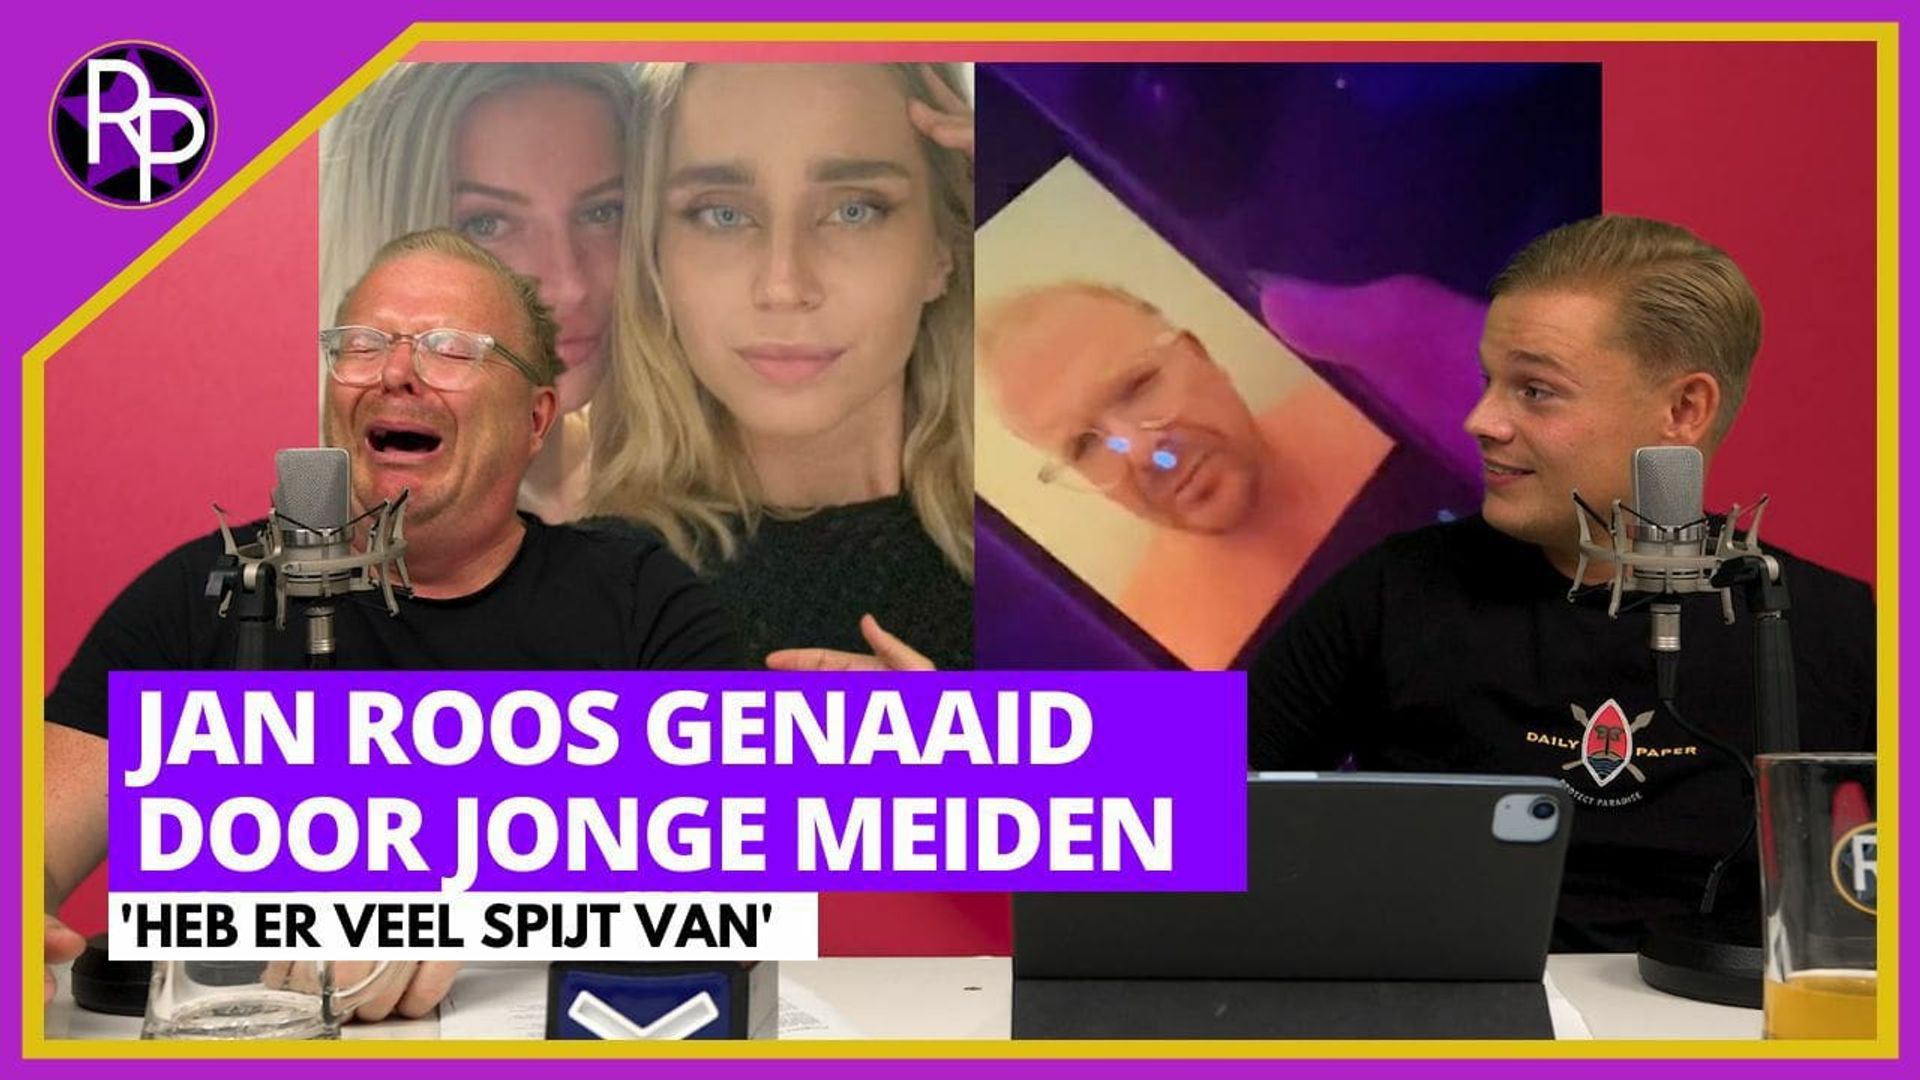 Jan Roos reageert op schandaal met jonge meiden